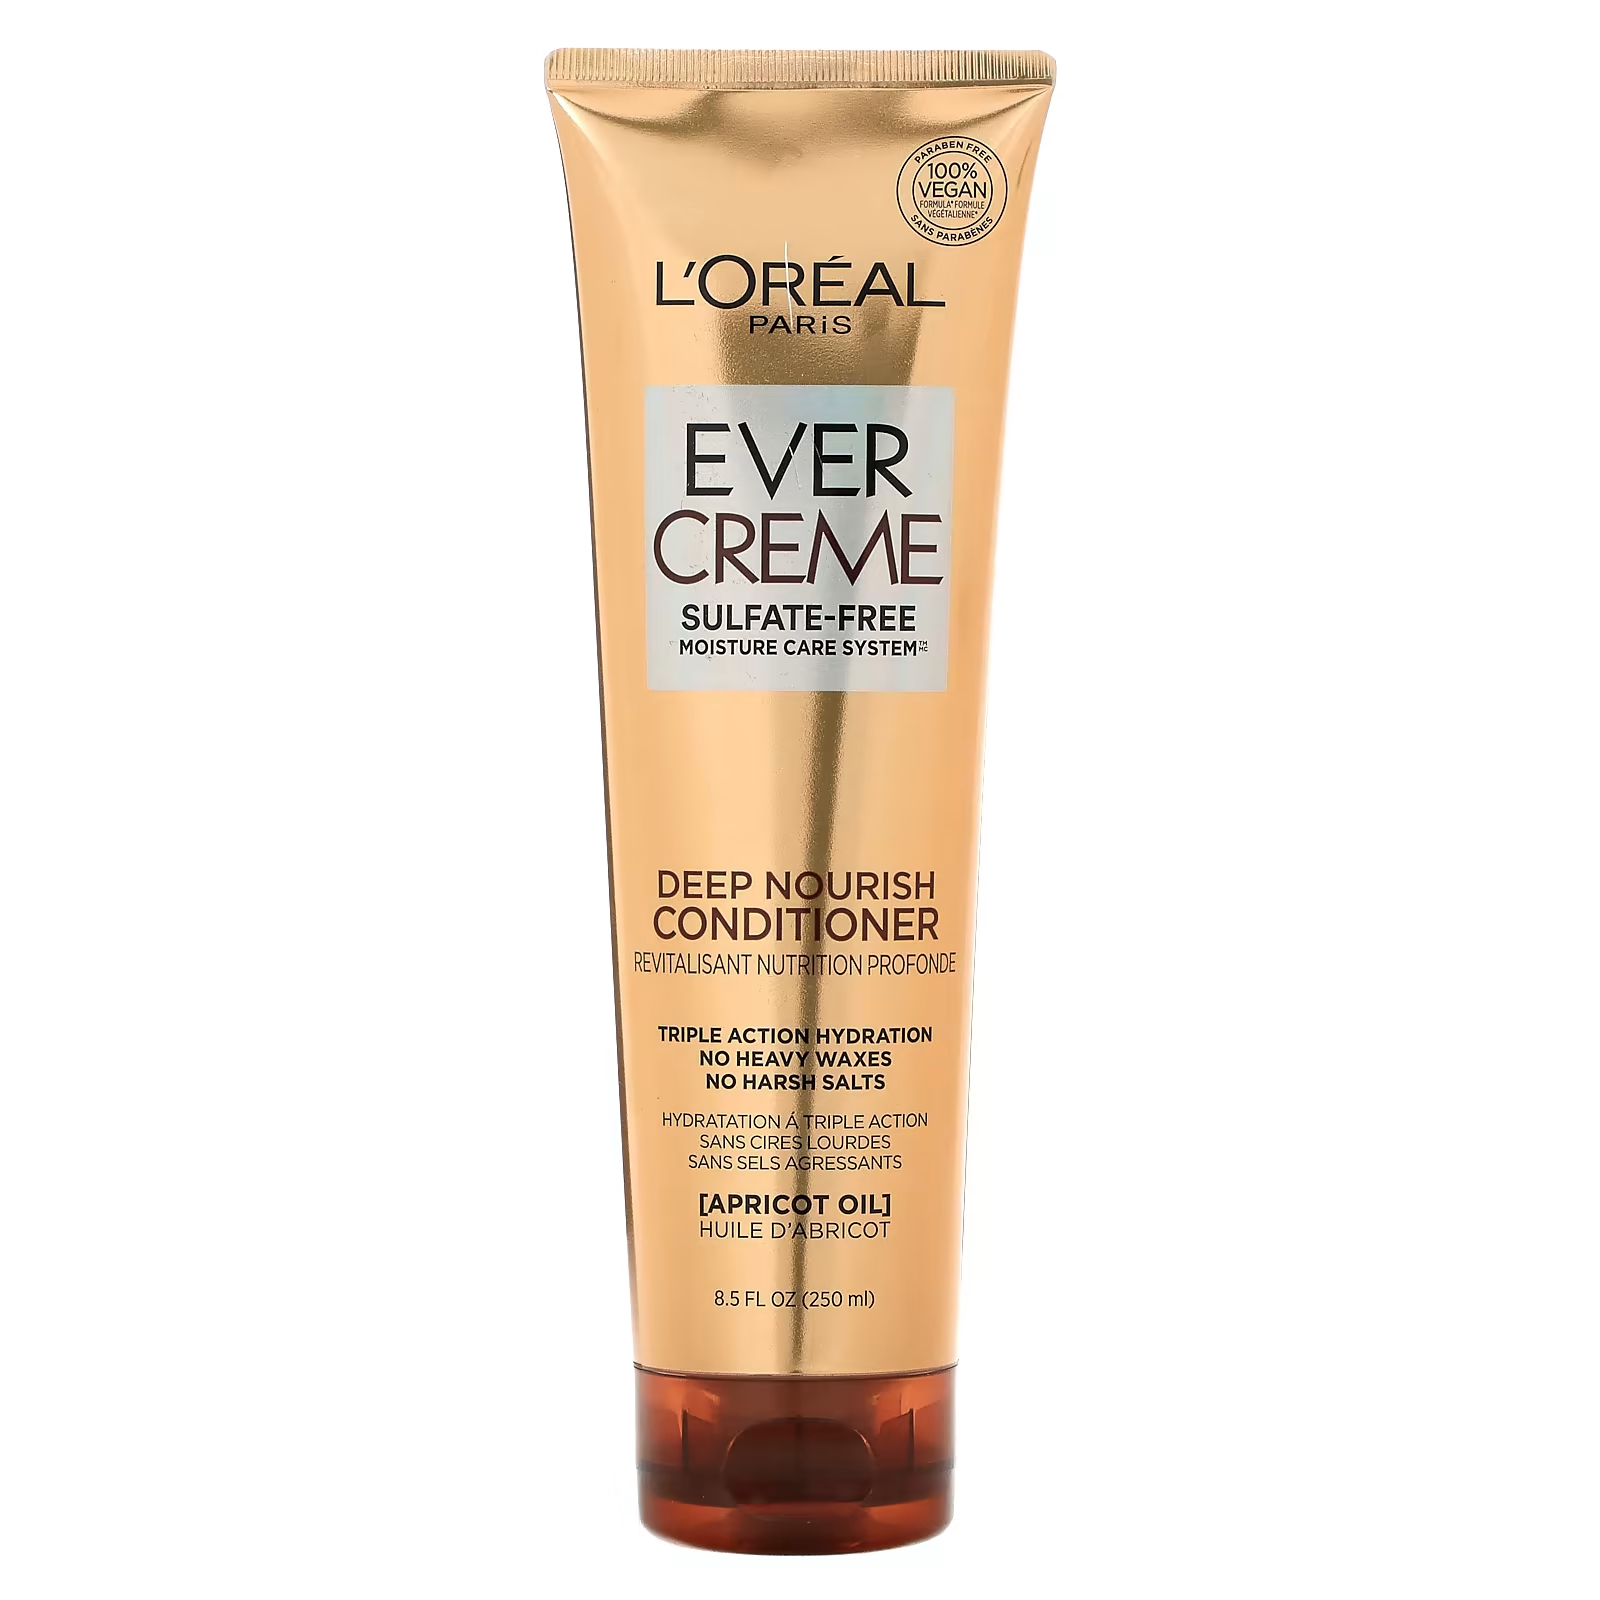 цена Кондиционер L'Oréal Ever Creme для глубокого питания с абрикосовым маслом, 250 мл